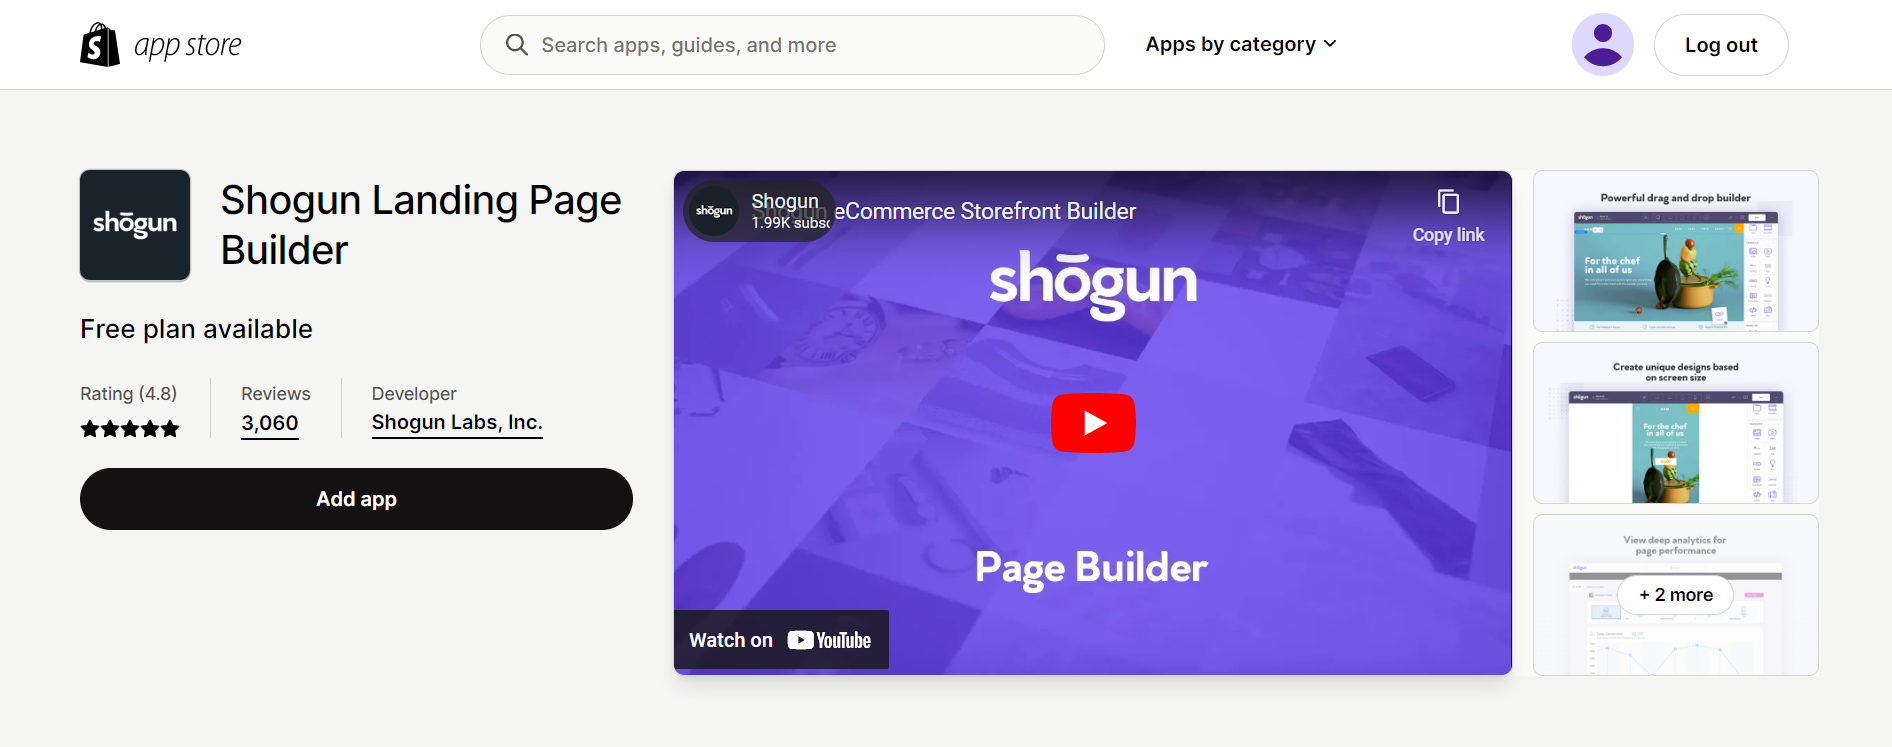 Shogun Landing Page Builder